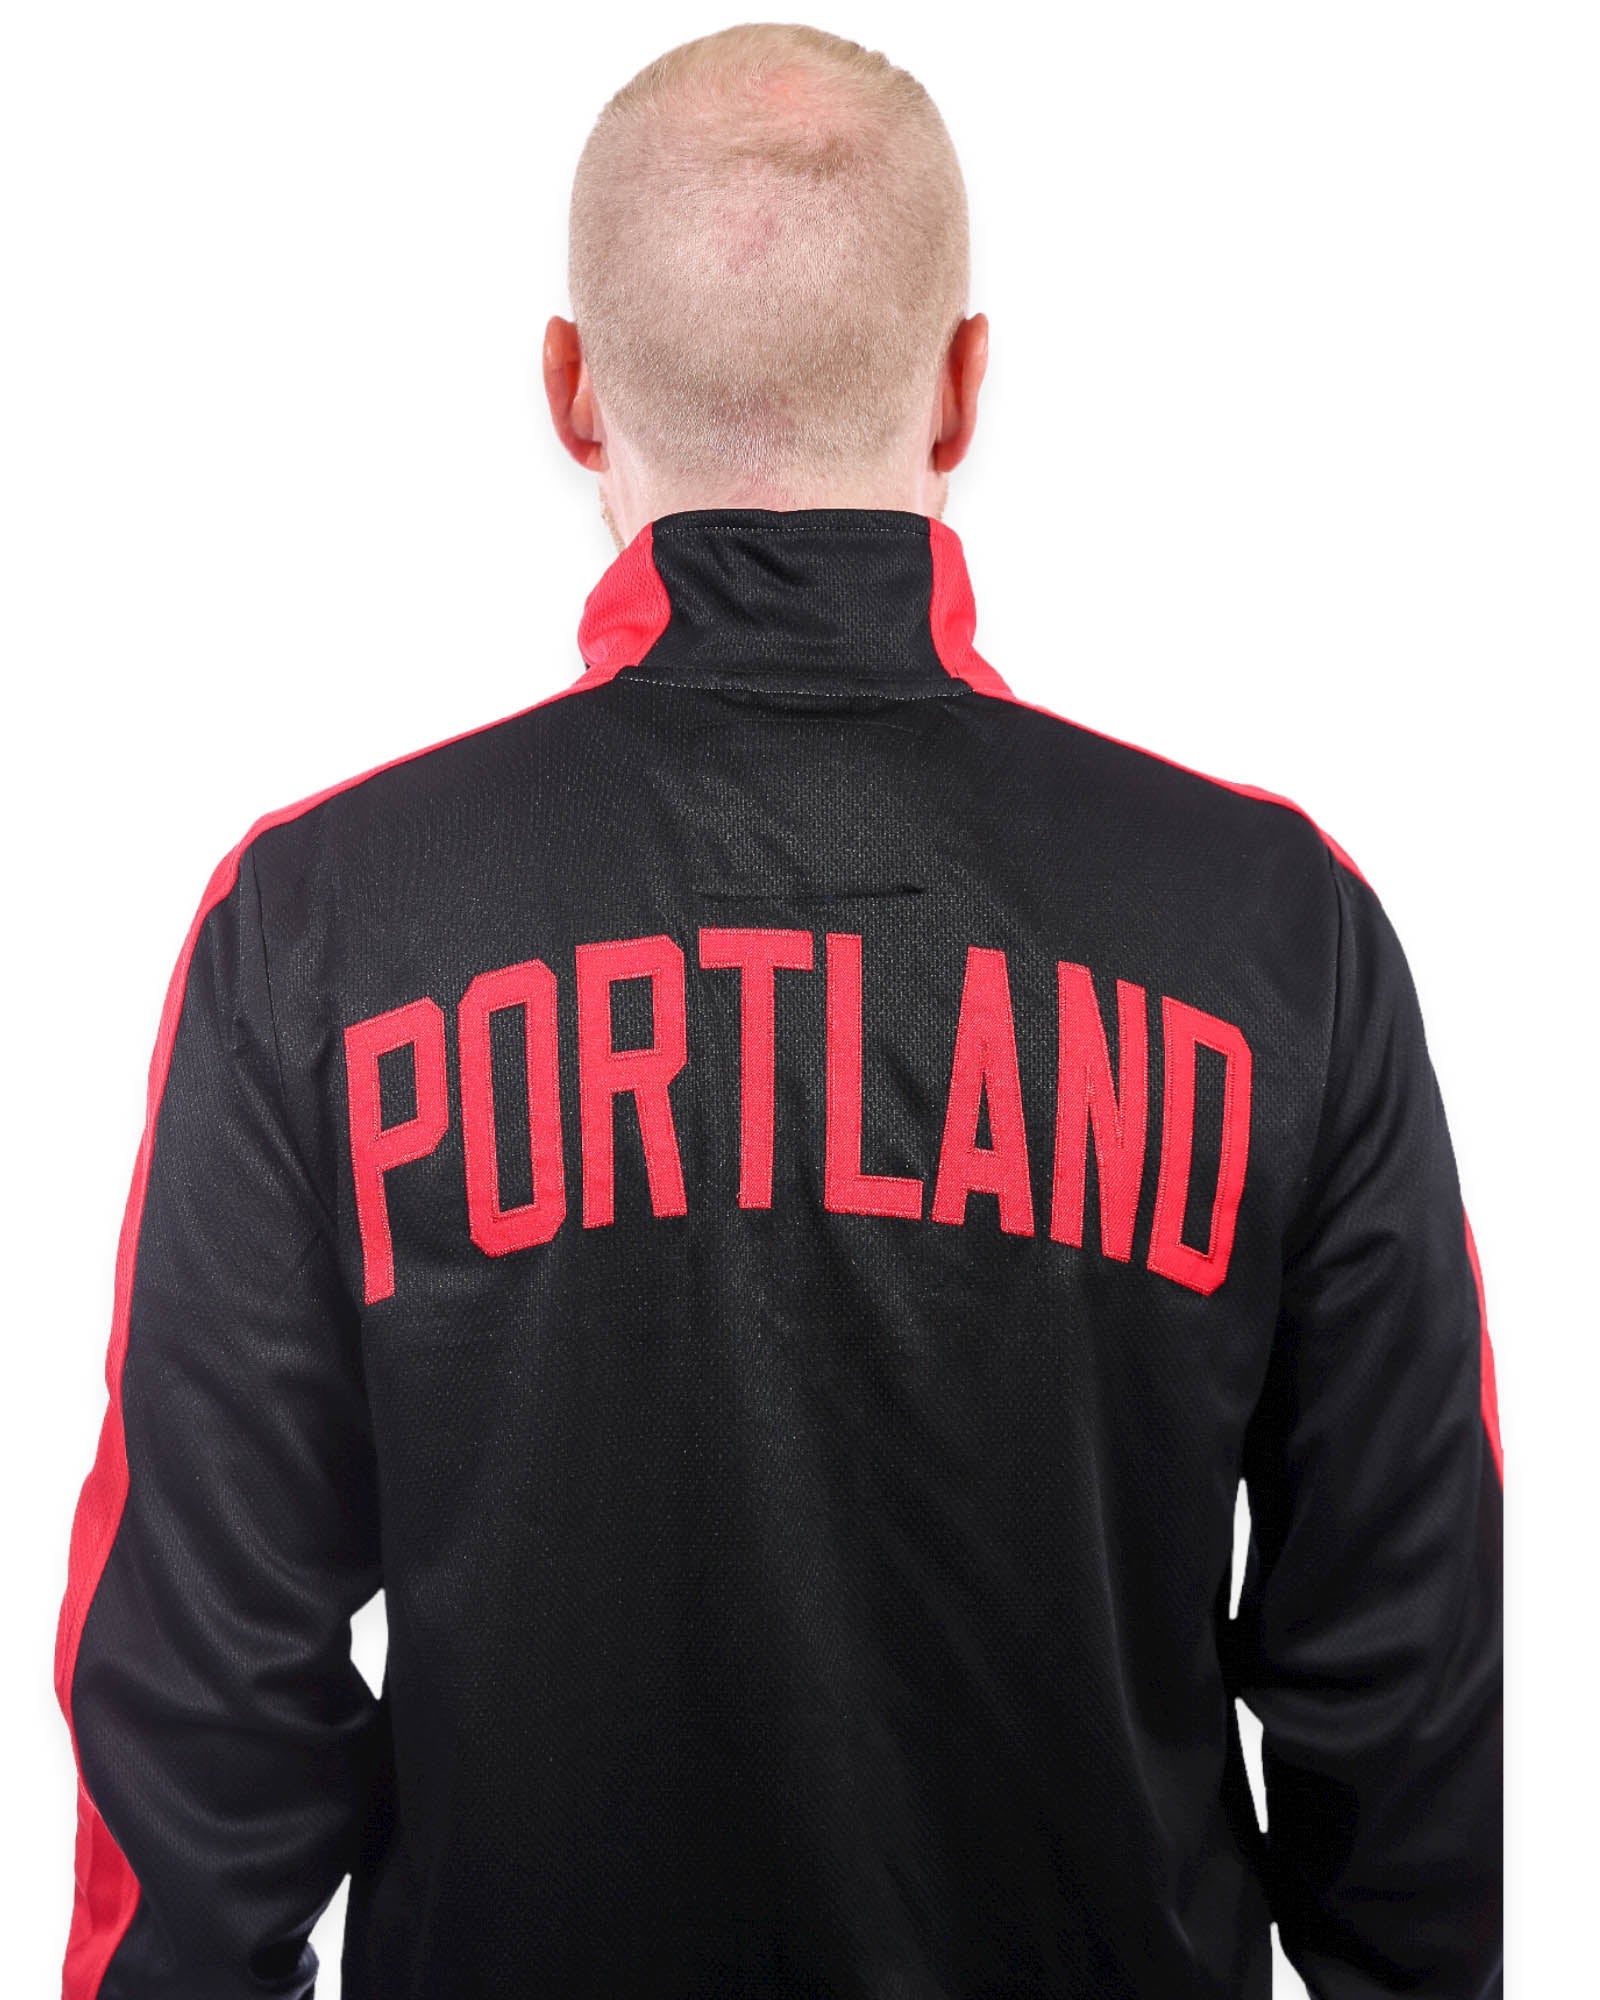 Portland Trail Blazers Interception Jacket